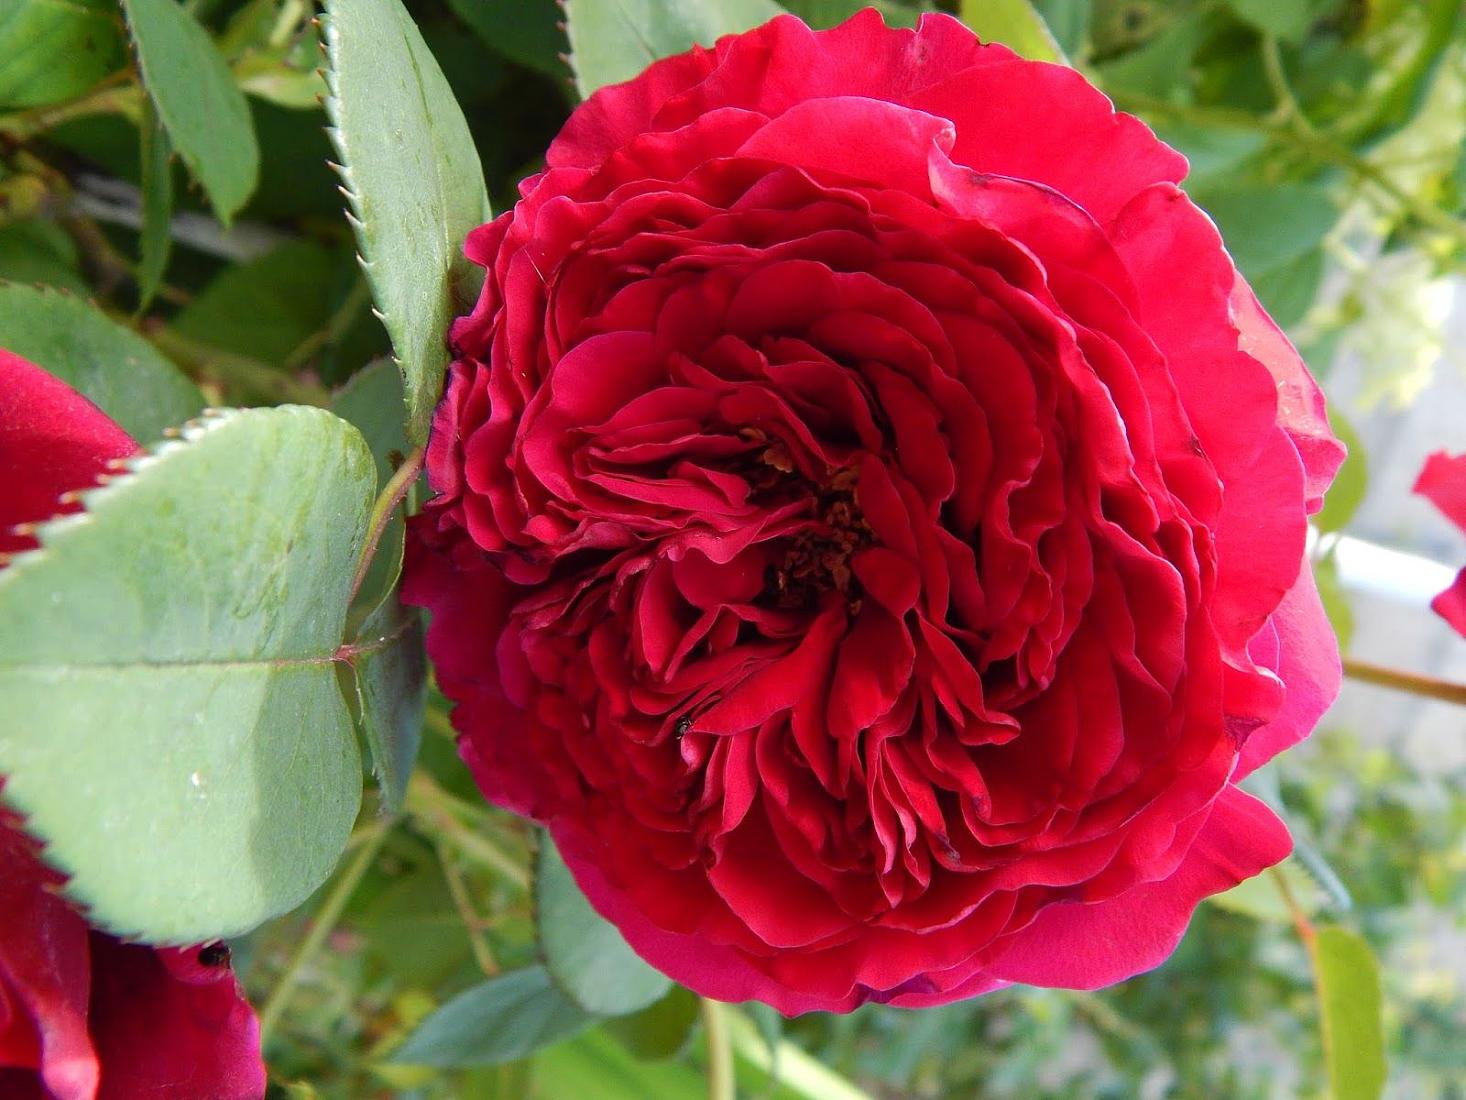 Роза 4 Ветра Rose des 4 Vents Delbard Франция, 2005